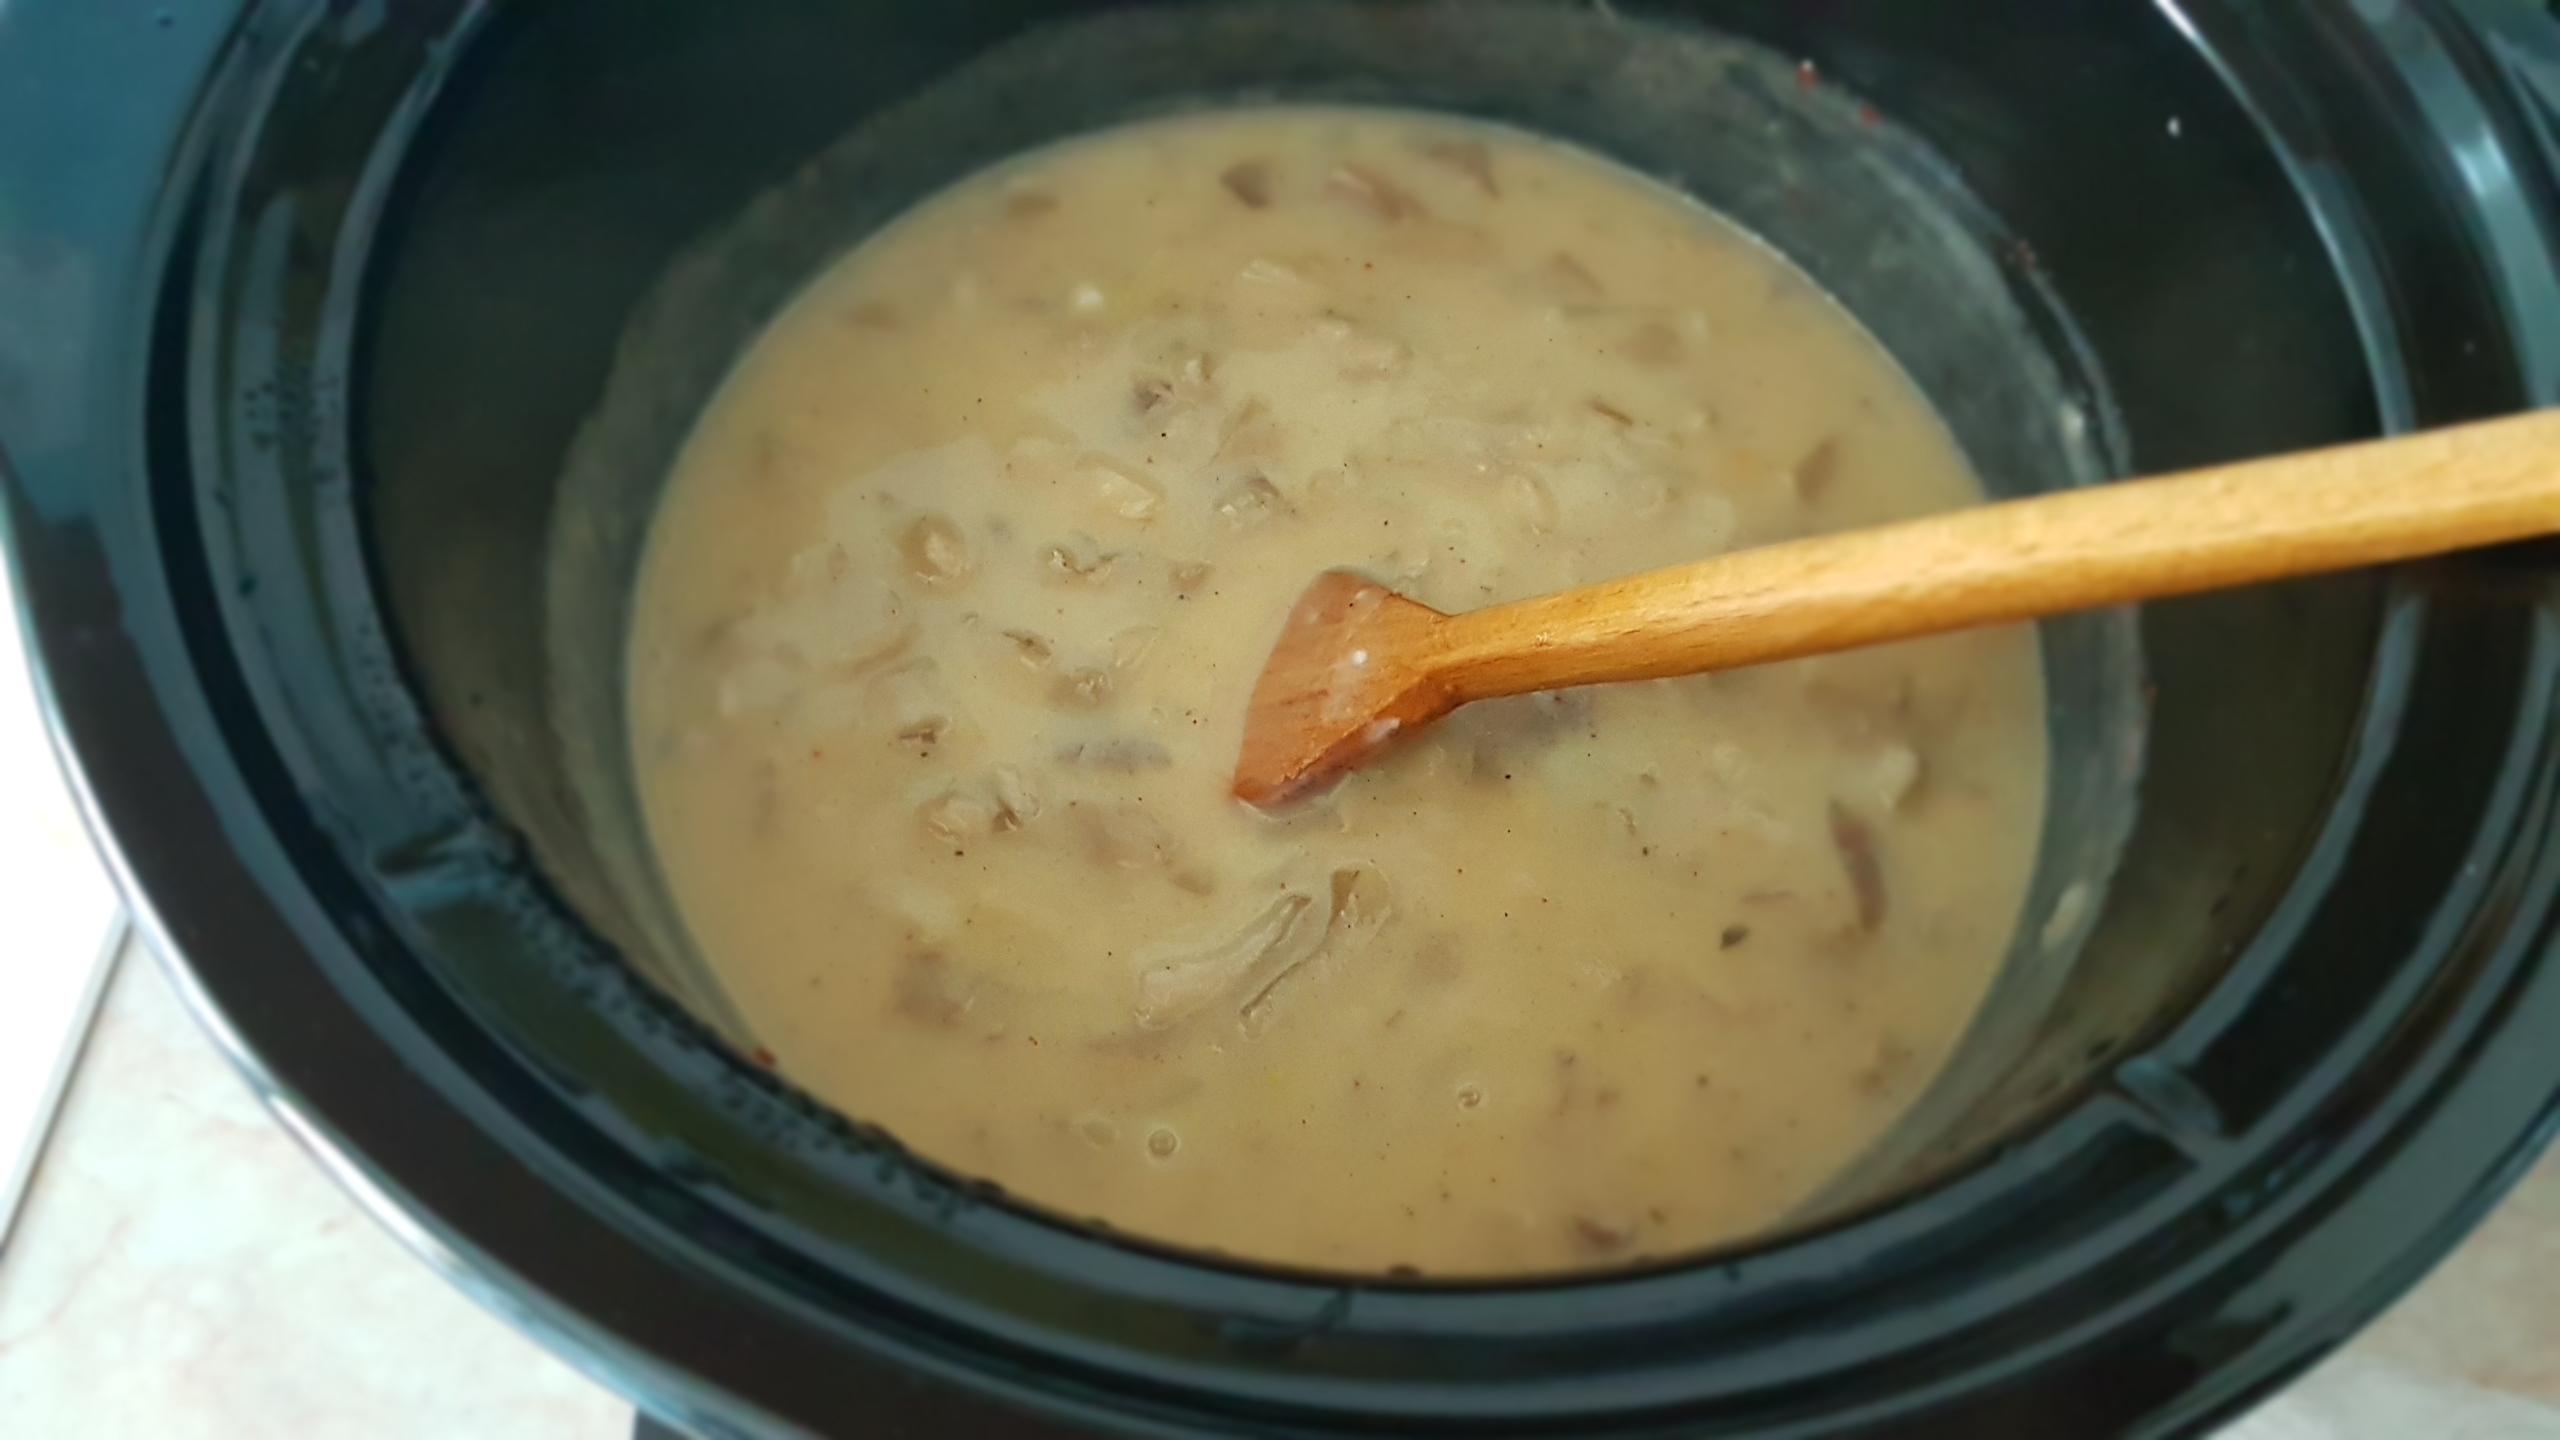 Tocanita de pleurotus la slow cooker Crock-Pot